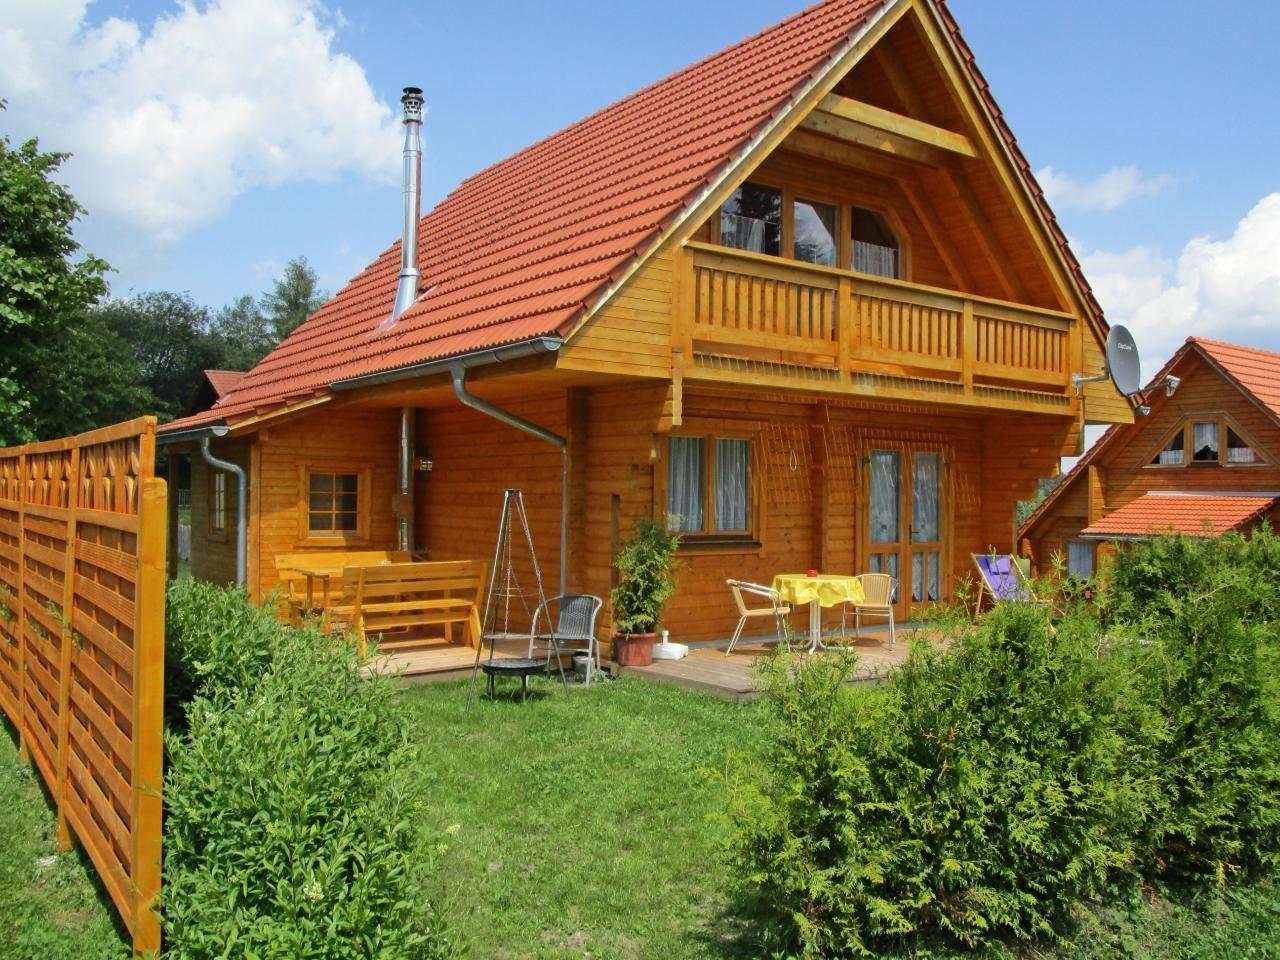 Ferienhaus in Philippsreut mit Kleiner Terrasse  in Europa